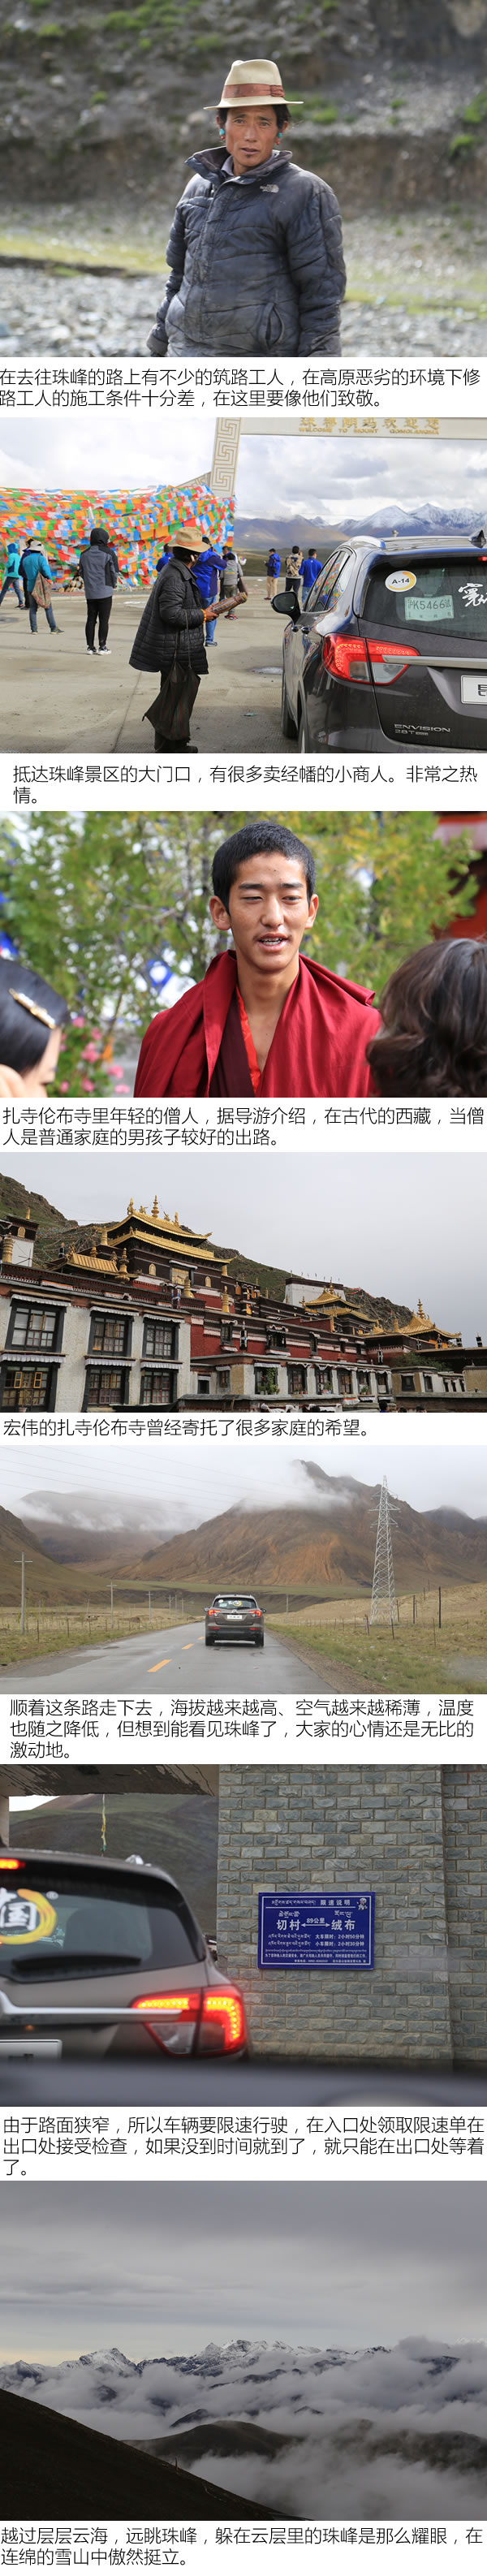 红票儿和信仰谁更大 别克寰行中国西藏行-图1